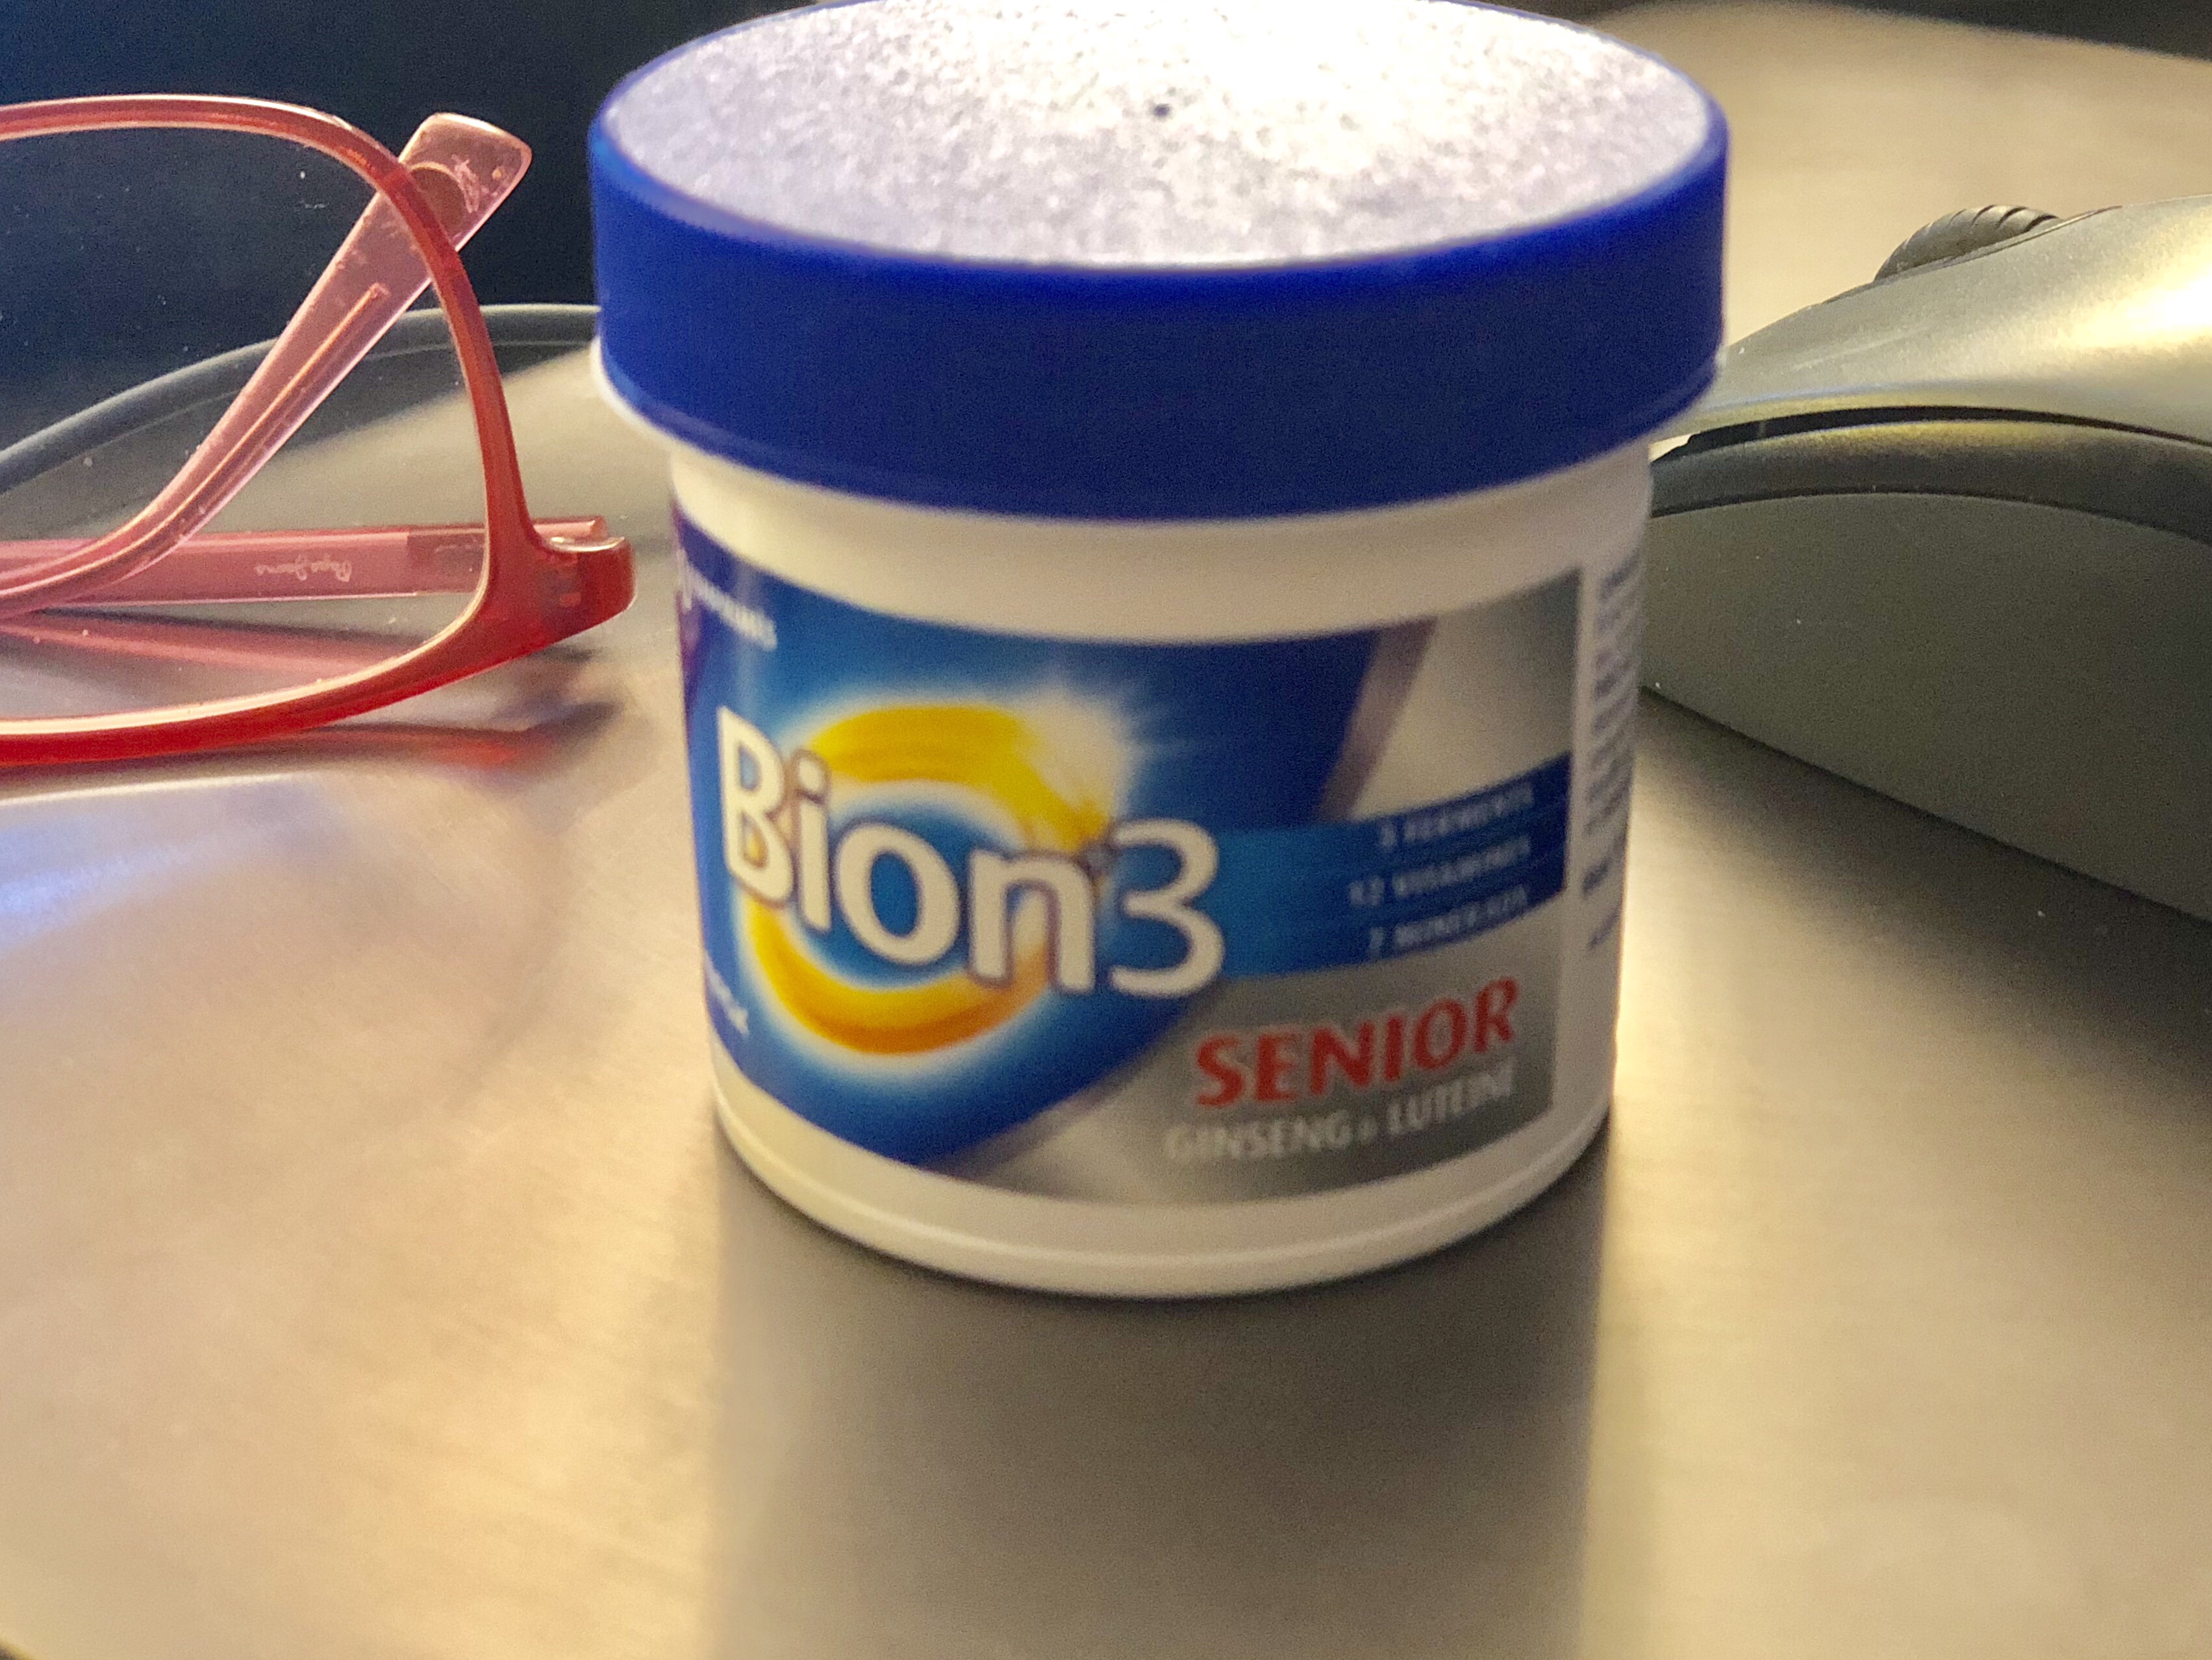 À la sortie de l’hiver, je prends bien plus que des vitamines: Bion 3 senior